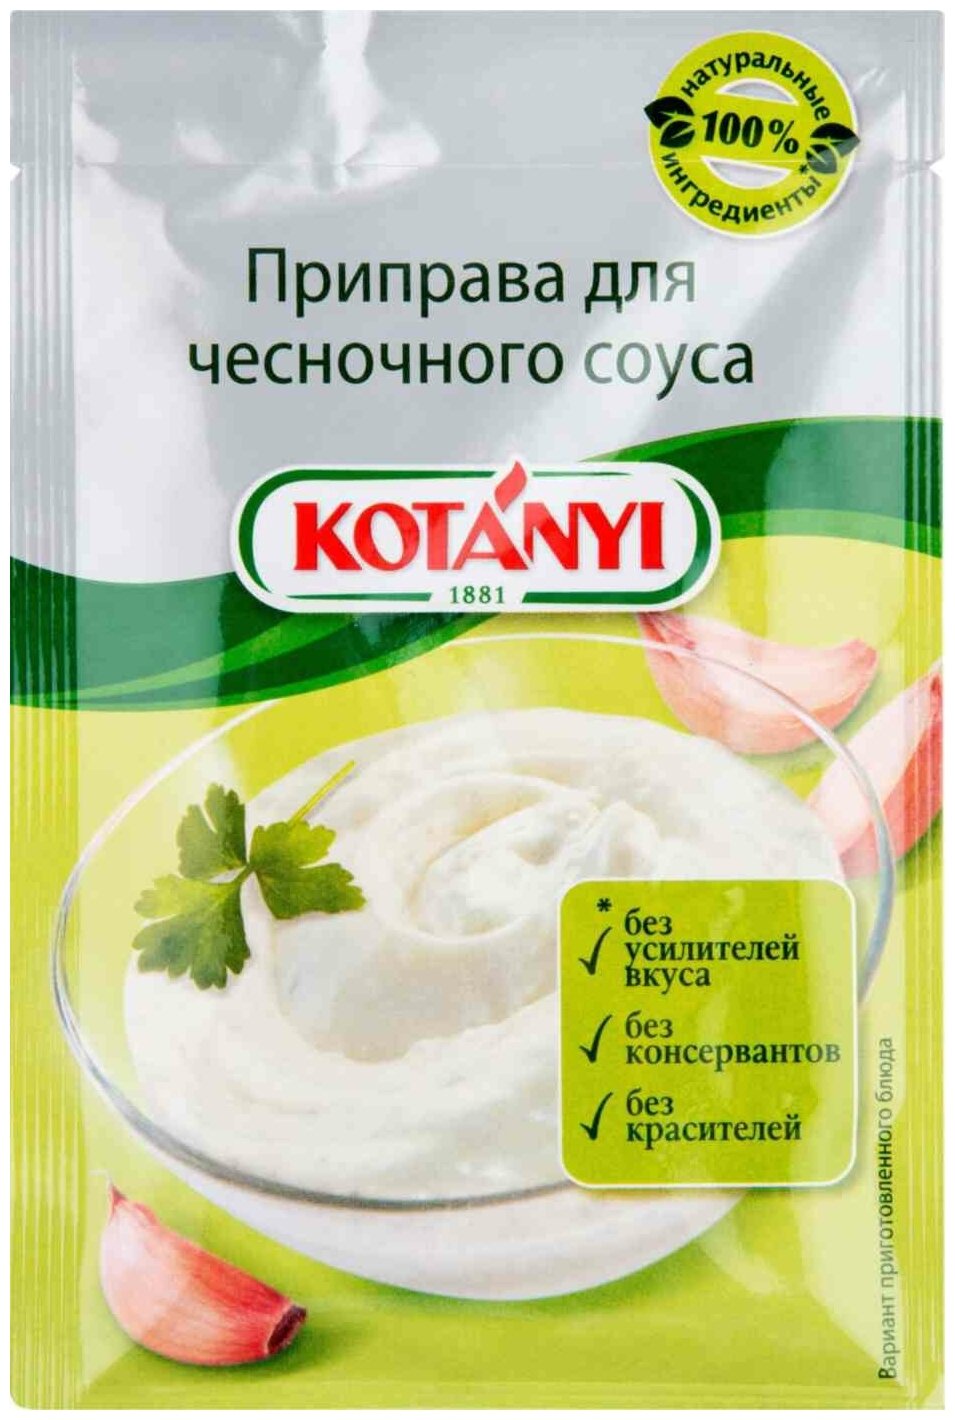 Приправа для чесночного соуса Kotanyi